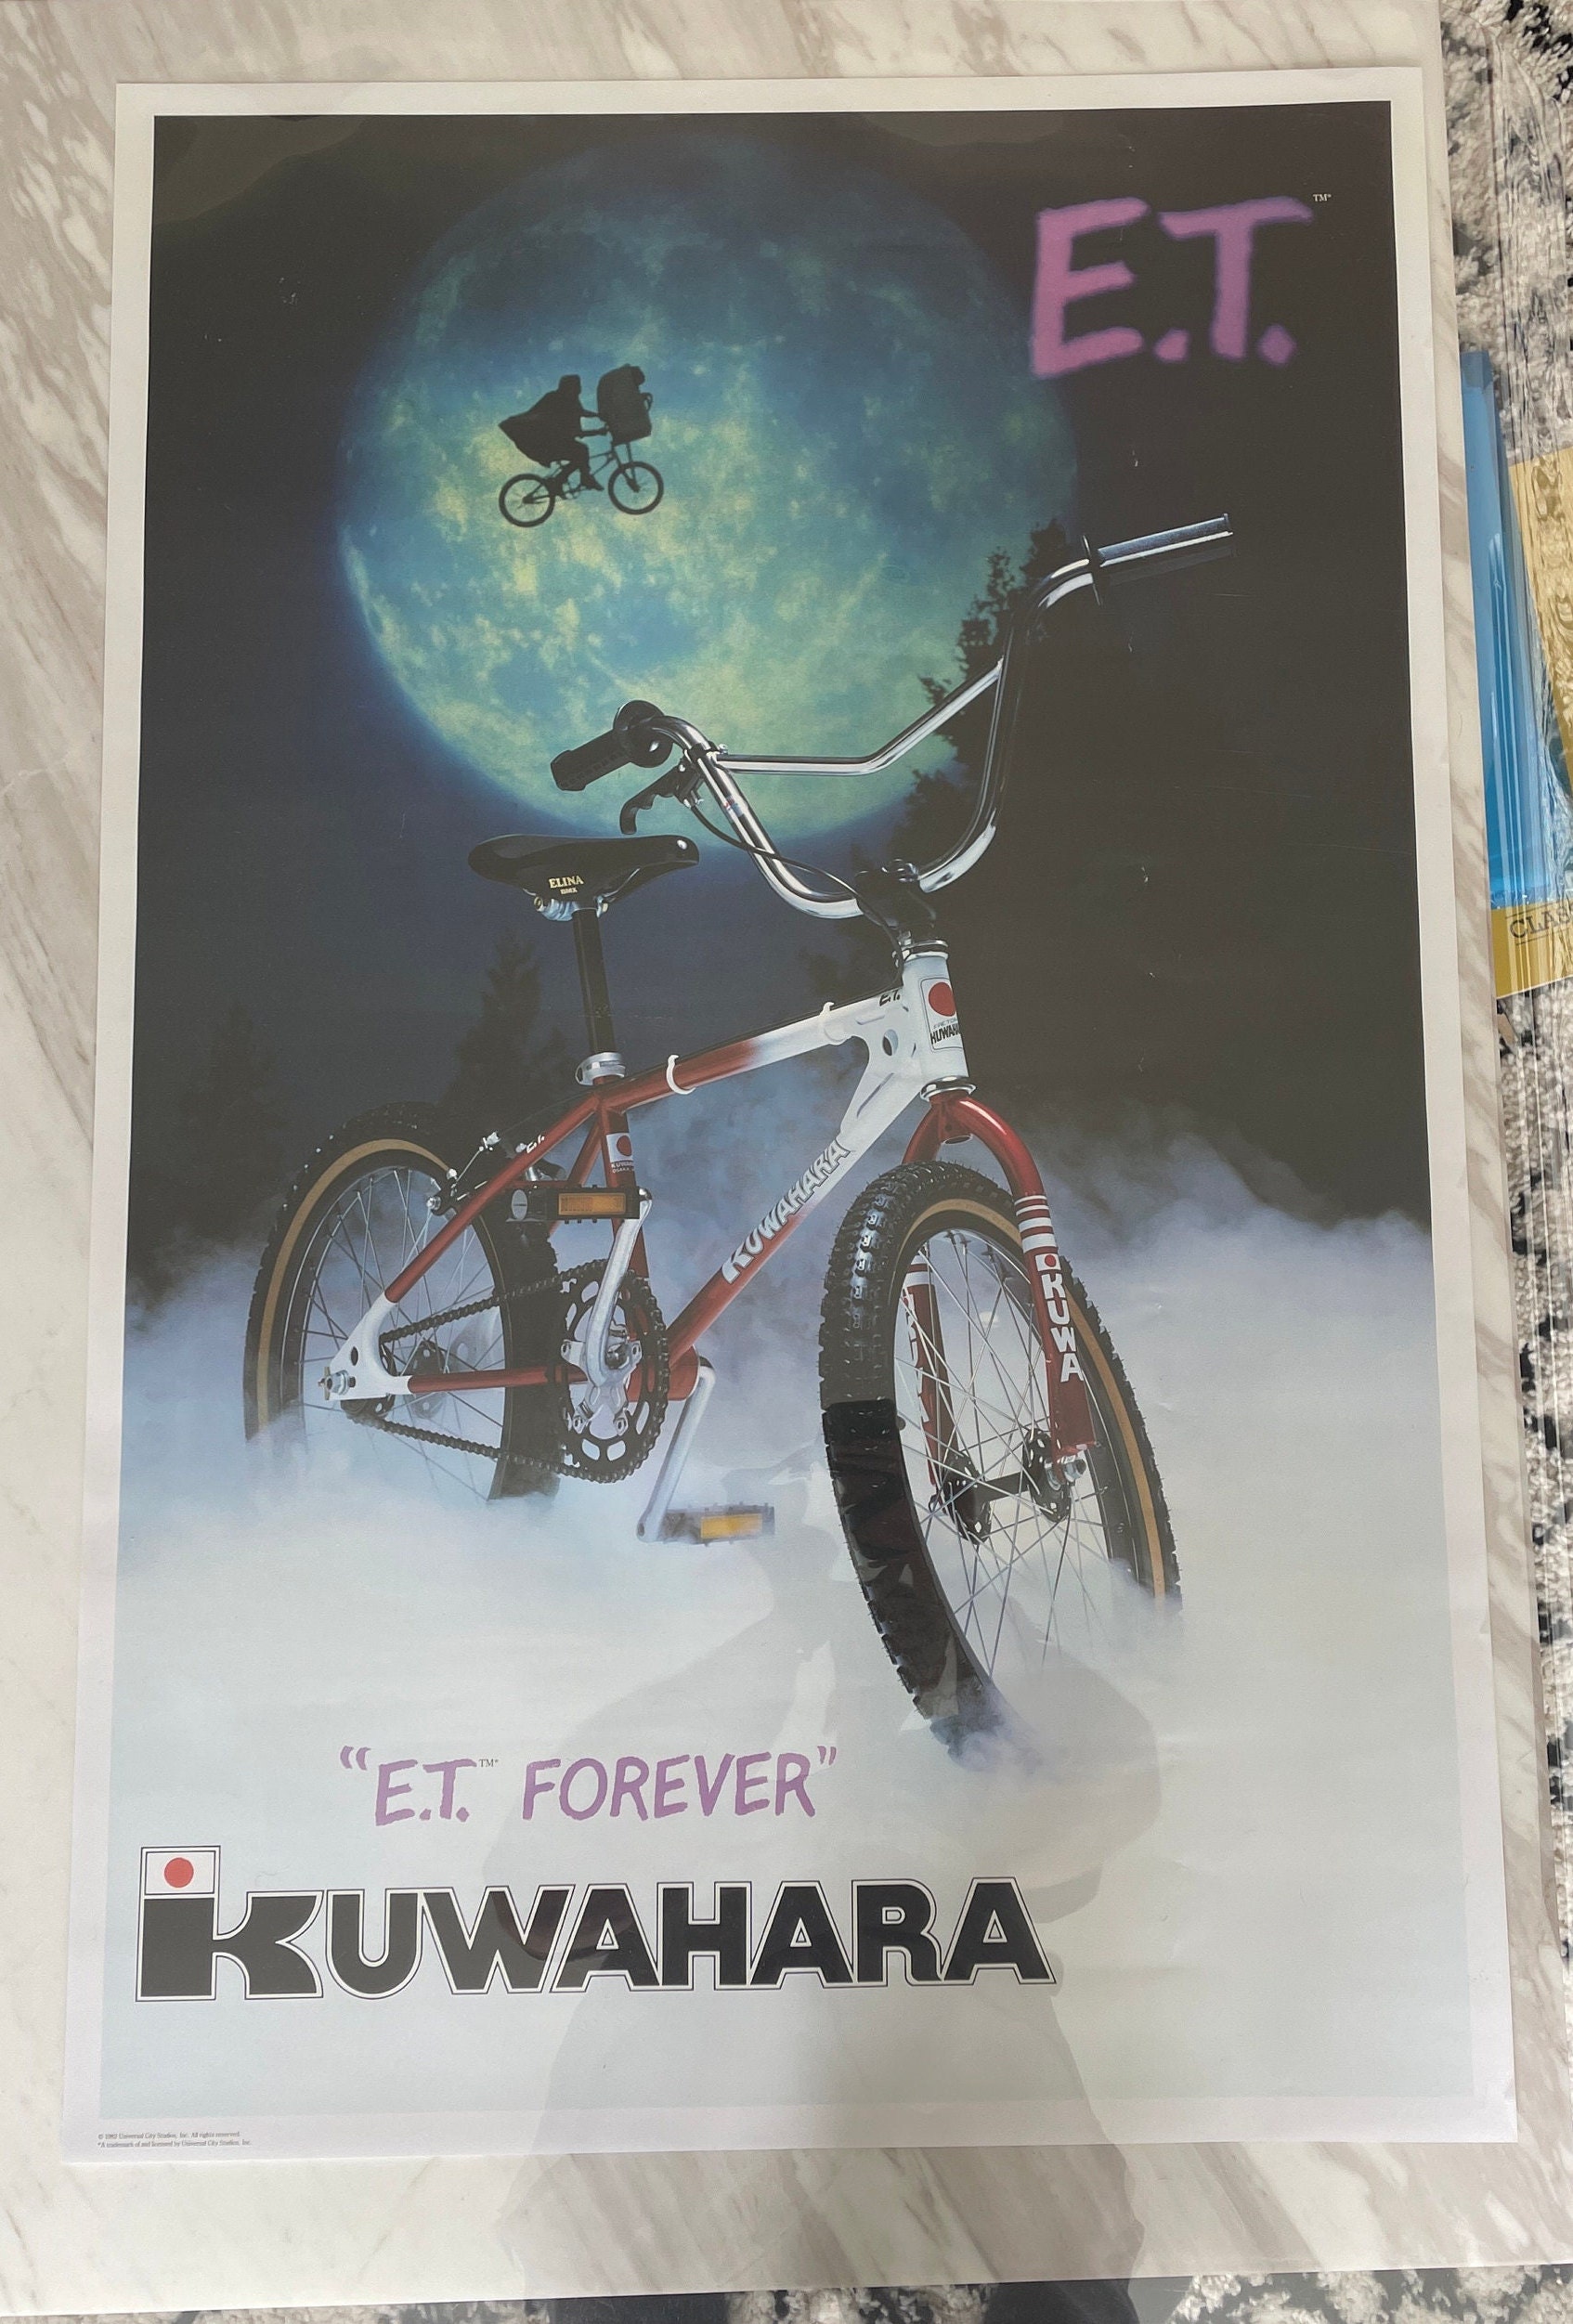 Kuwahara Bmx for sale| 94 ads for used Kuwahara Bmxs